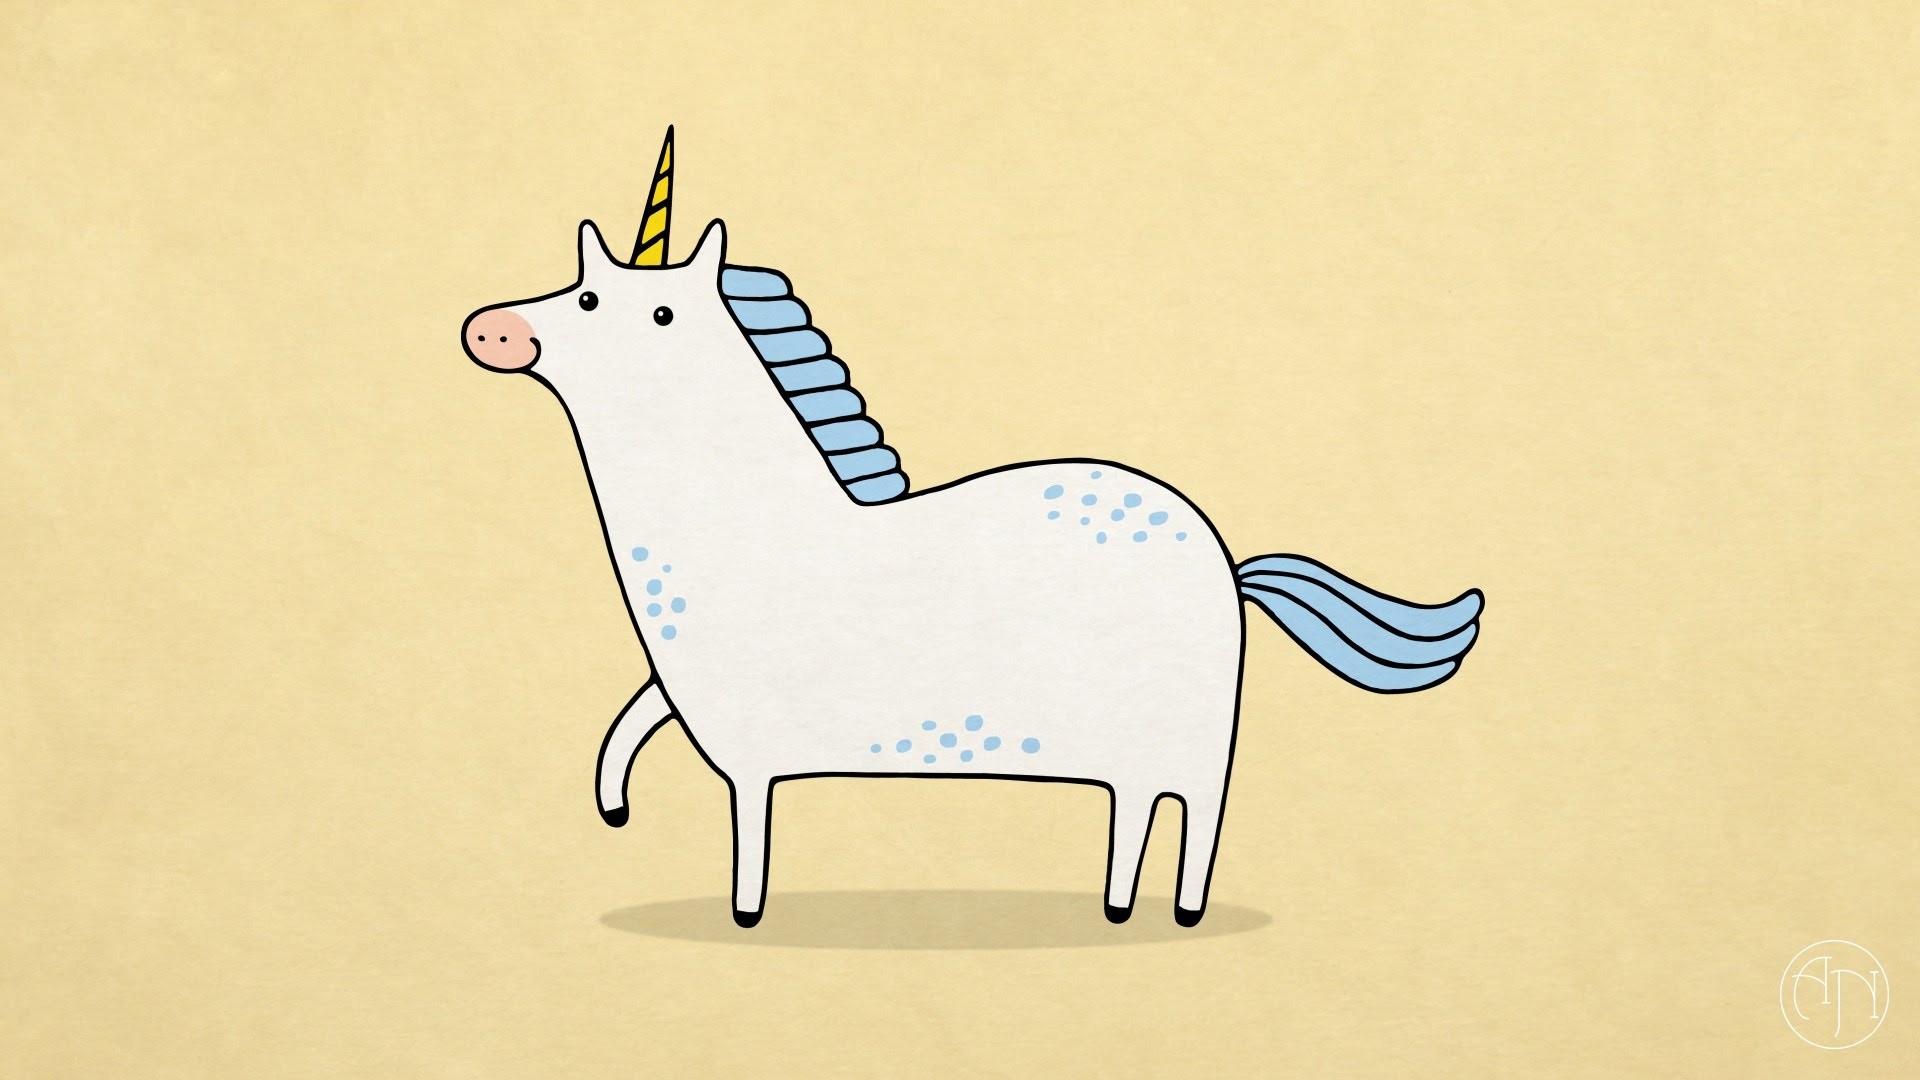 1920x1080 How To Draw] A Funny Cartoon Unicorn